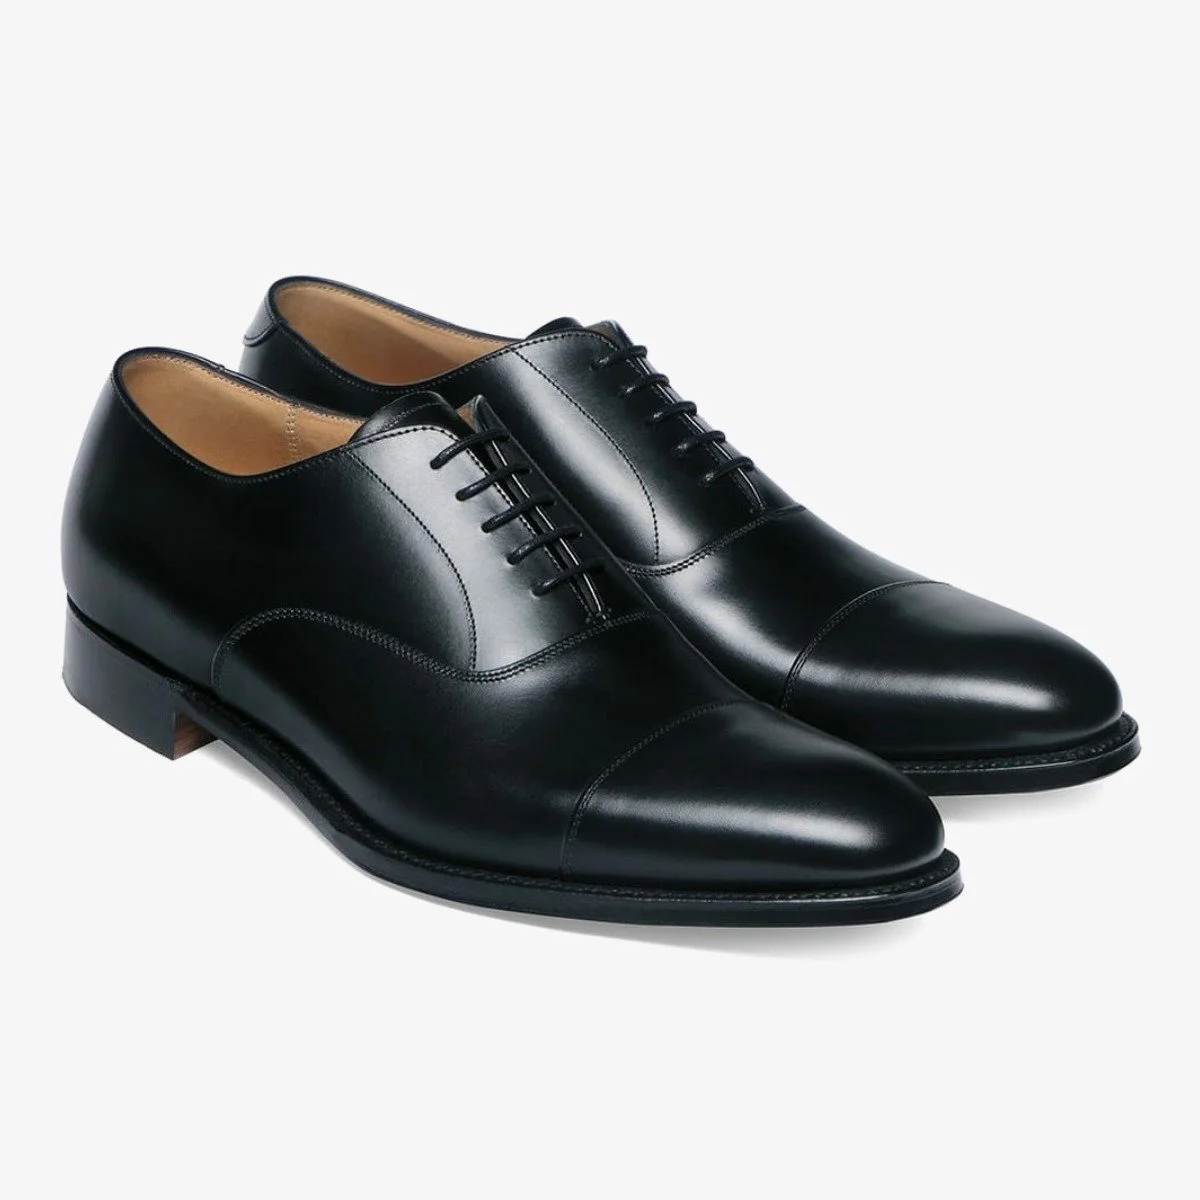 Cheaney Lime black toe cap men's oxford shoes